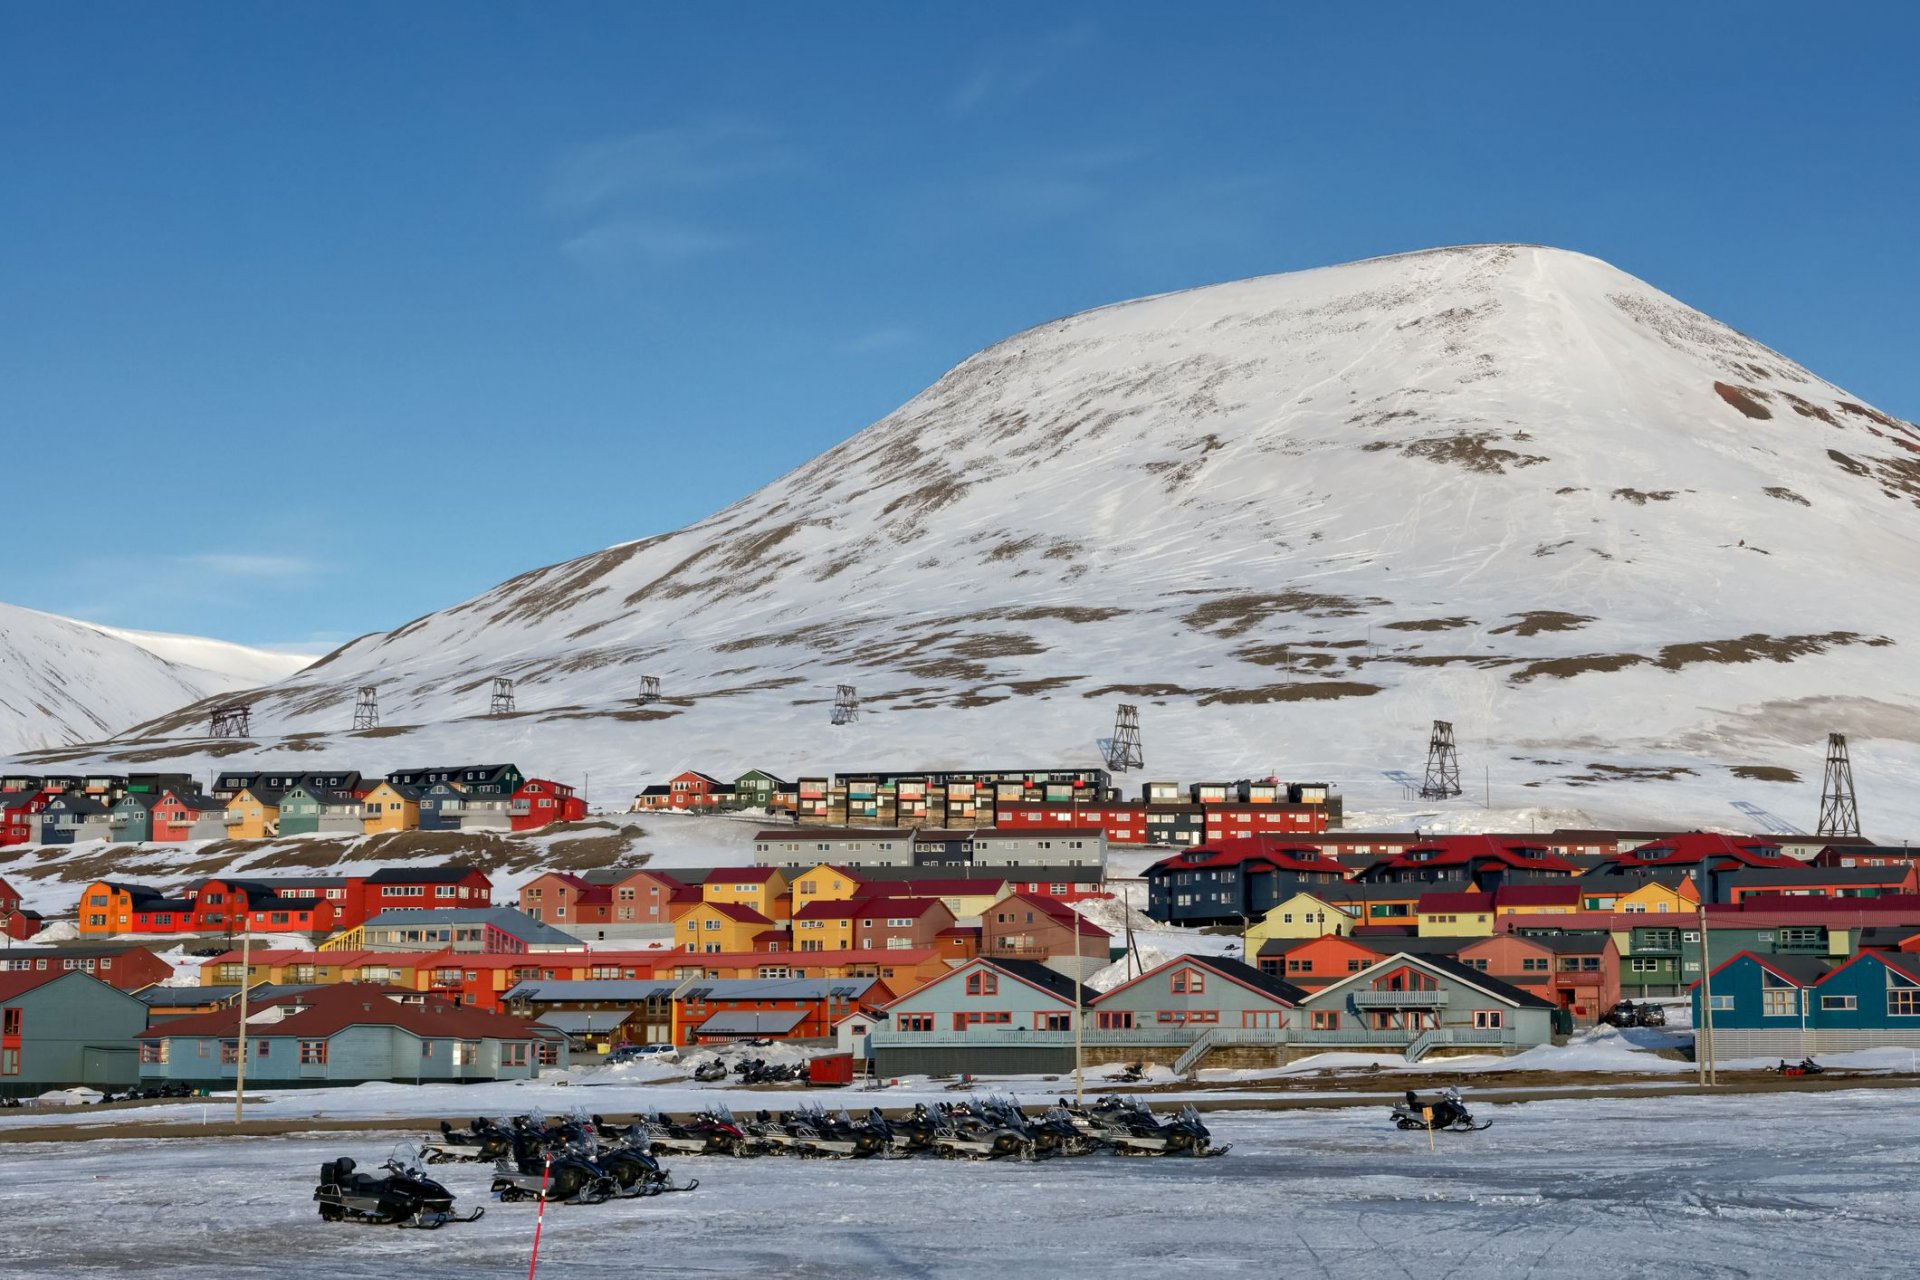 Къщи в различни цветове на архипелага Свалбард